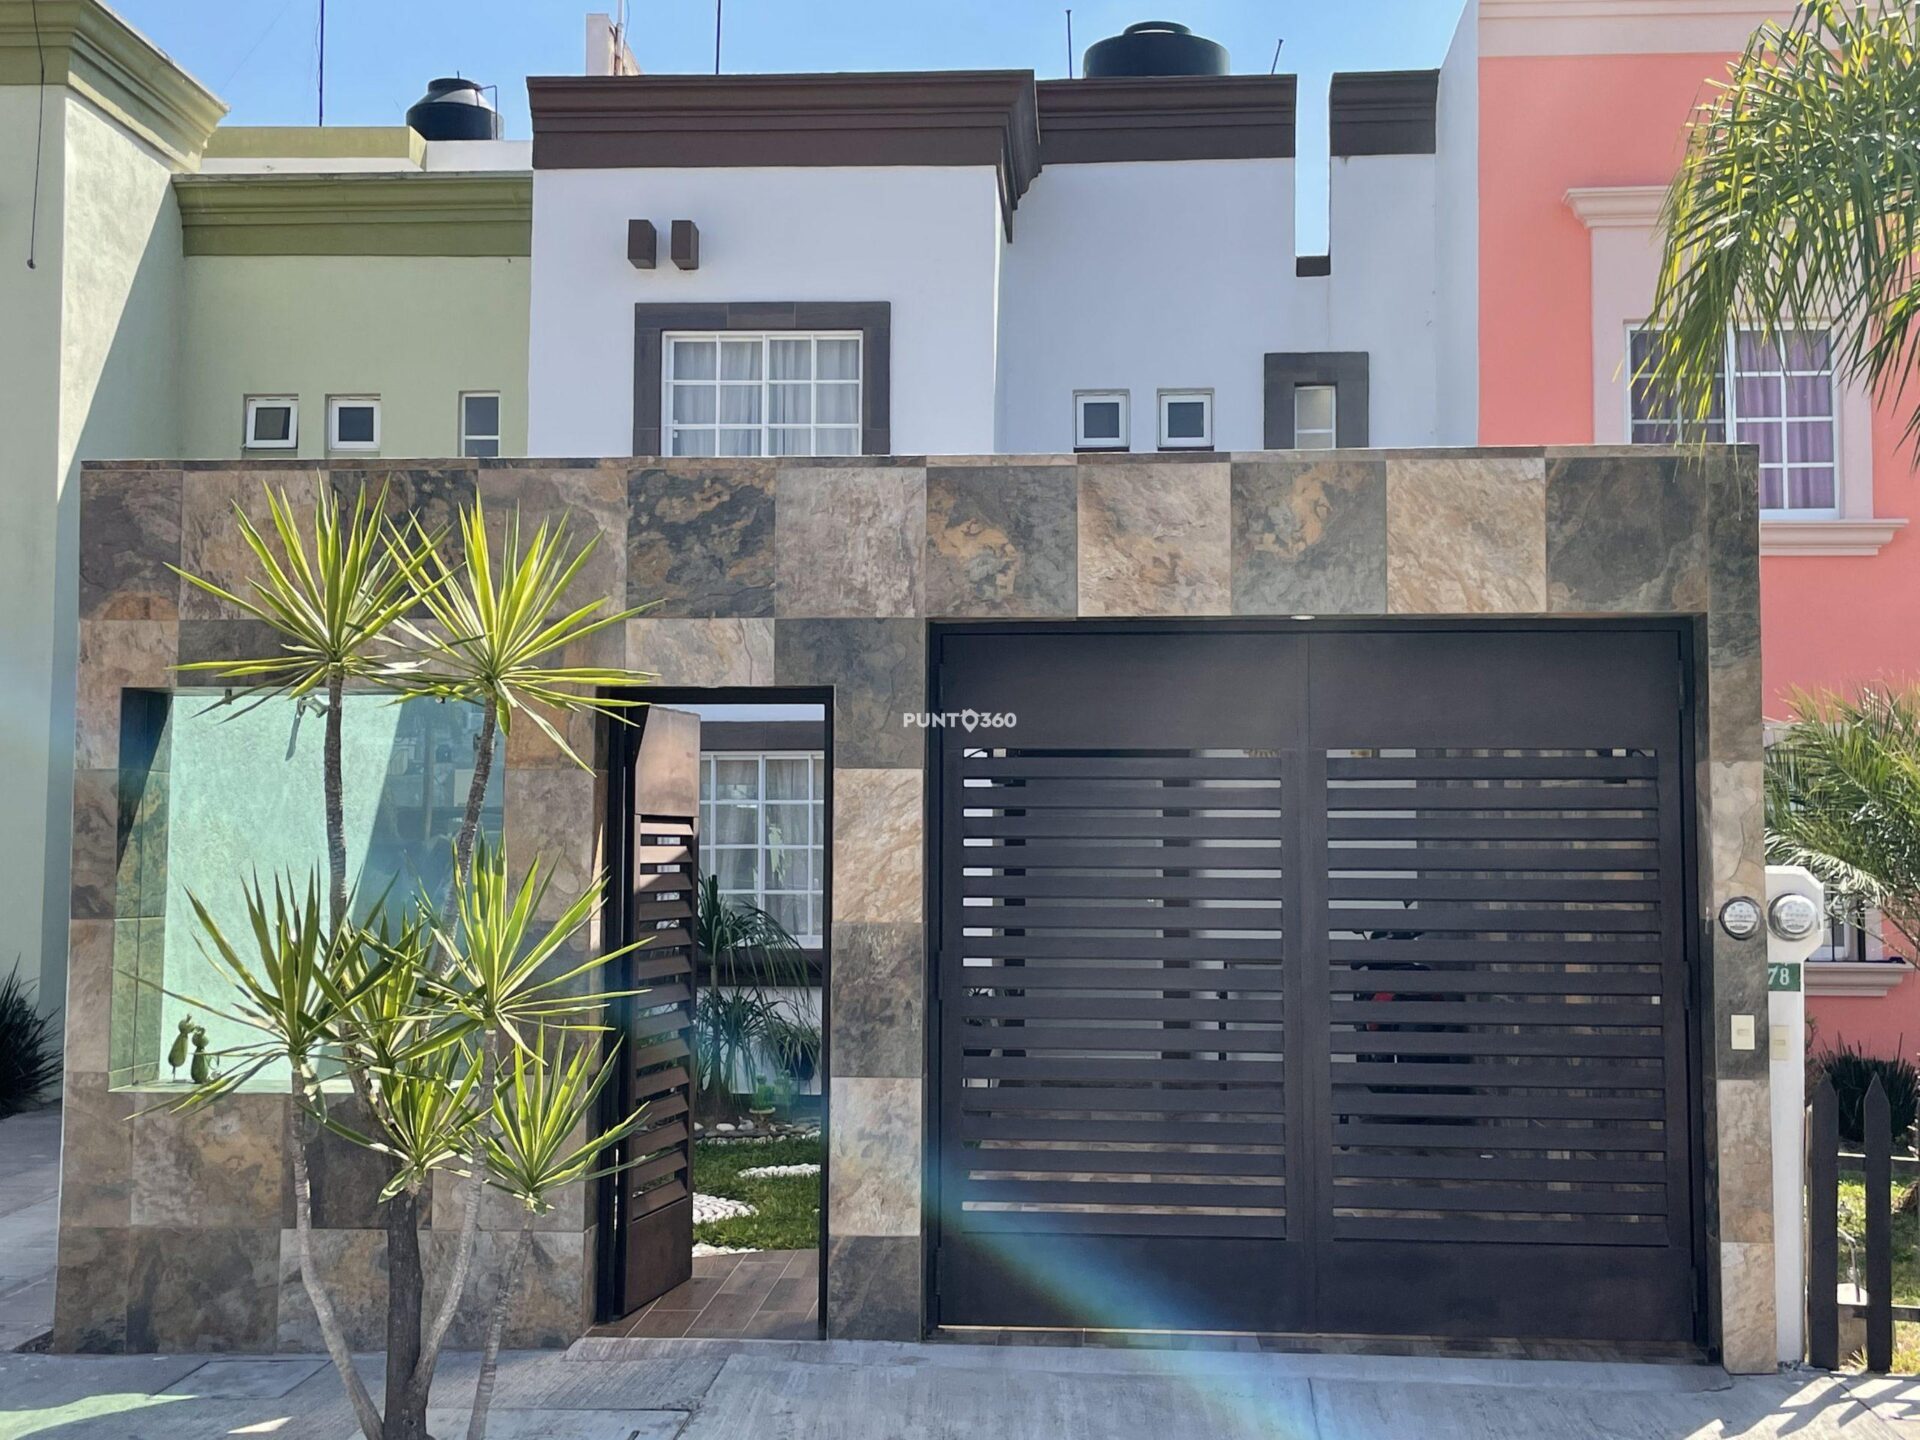 Casa en venta Moroleón Guanajuato, fraccionamiento rinconadas, excelentes condiciones